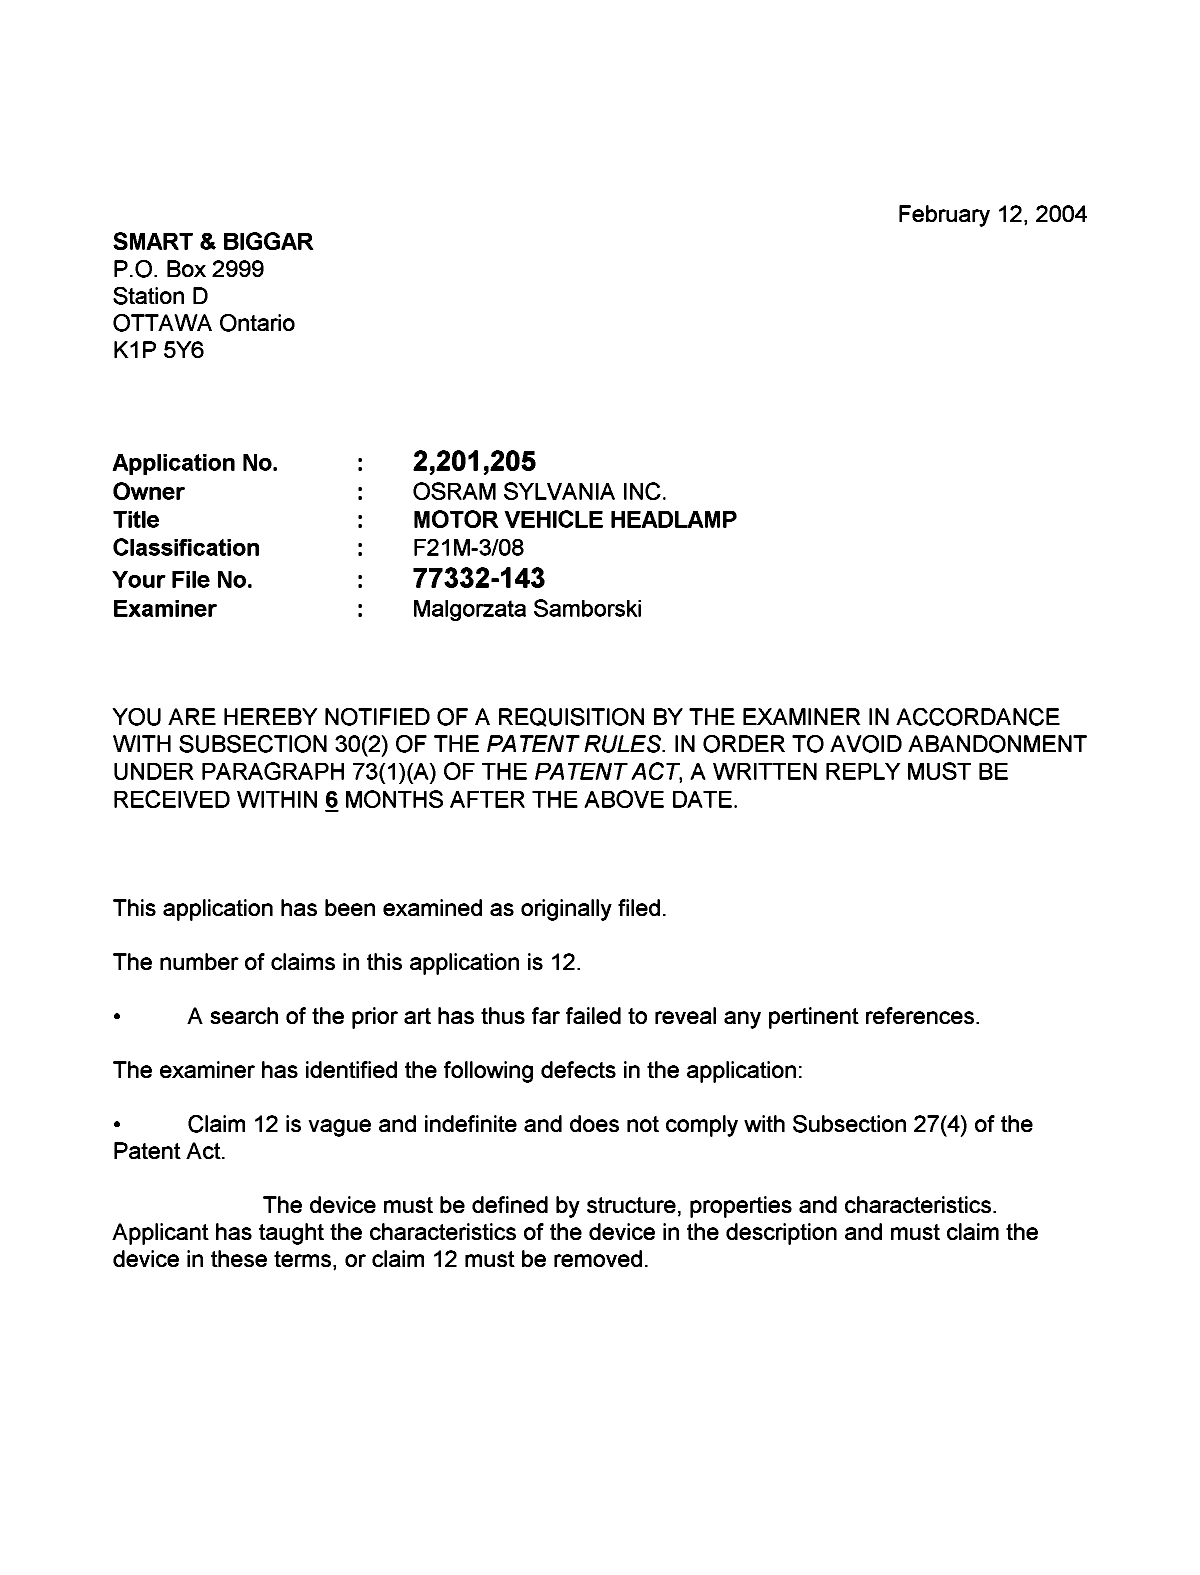 Document de brevet canadien 2201205. Poursuite-Amendment 20040212. Image 1 de 2